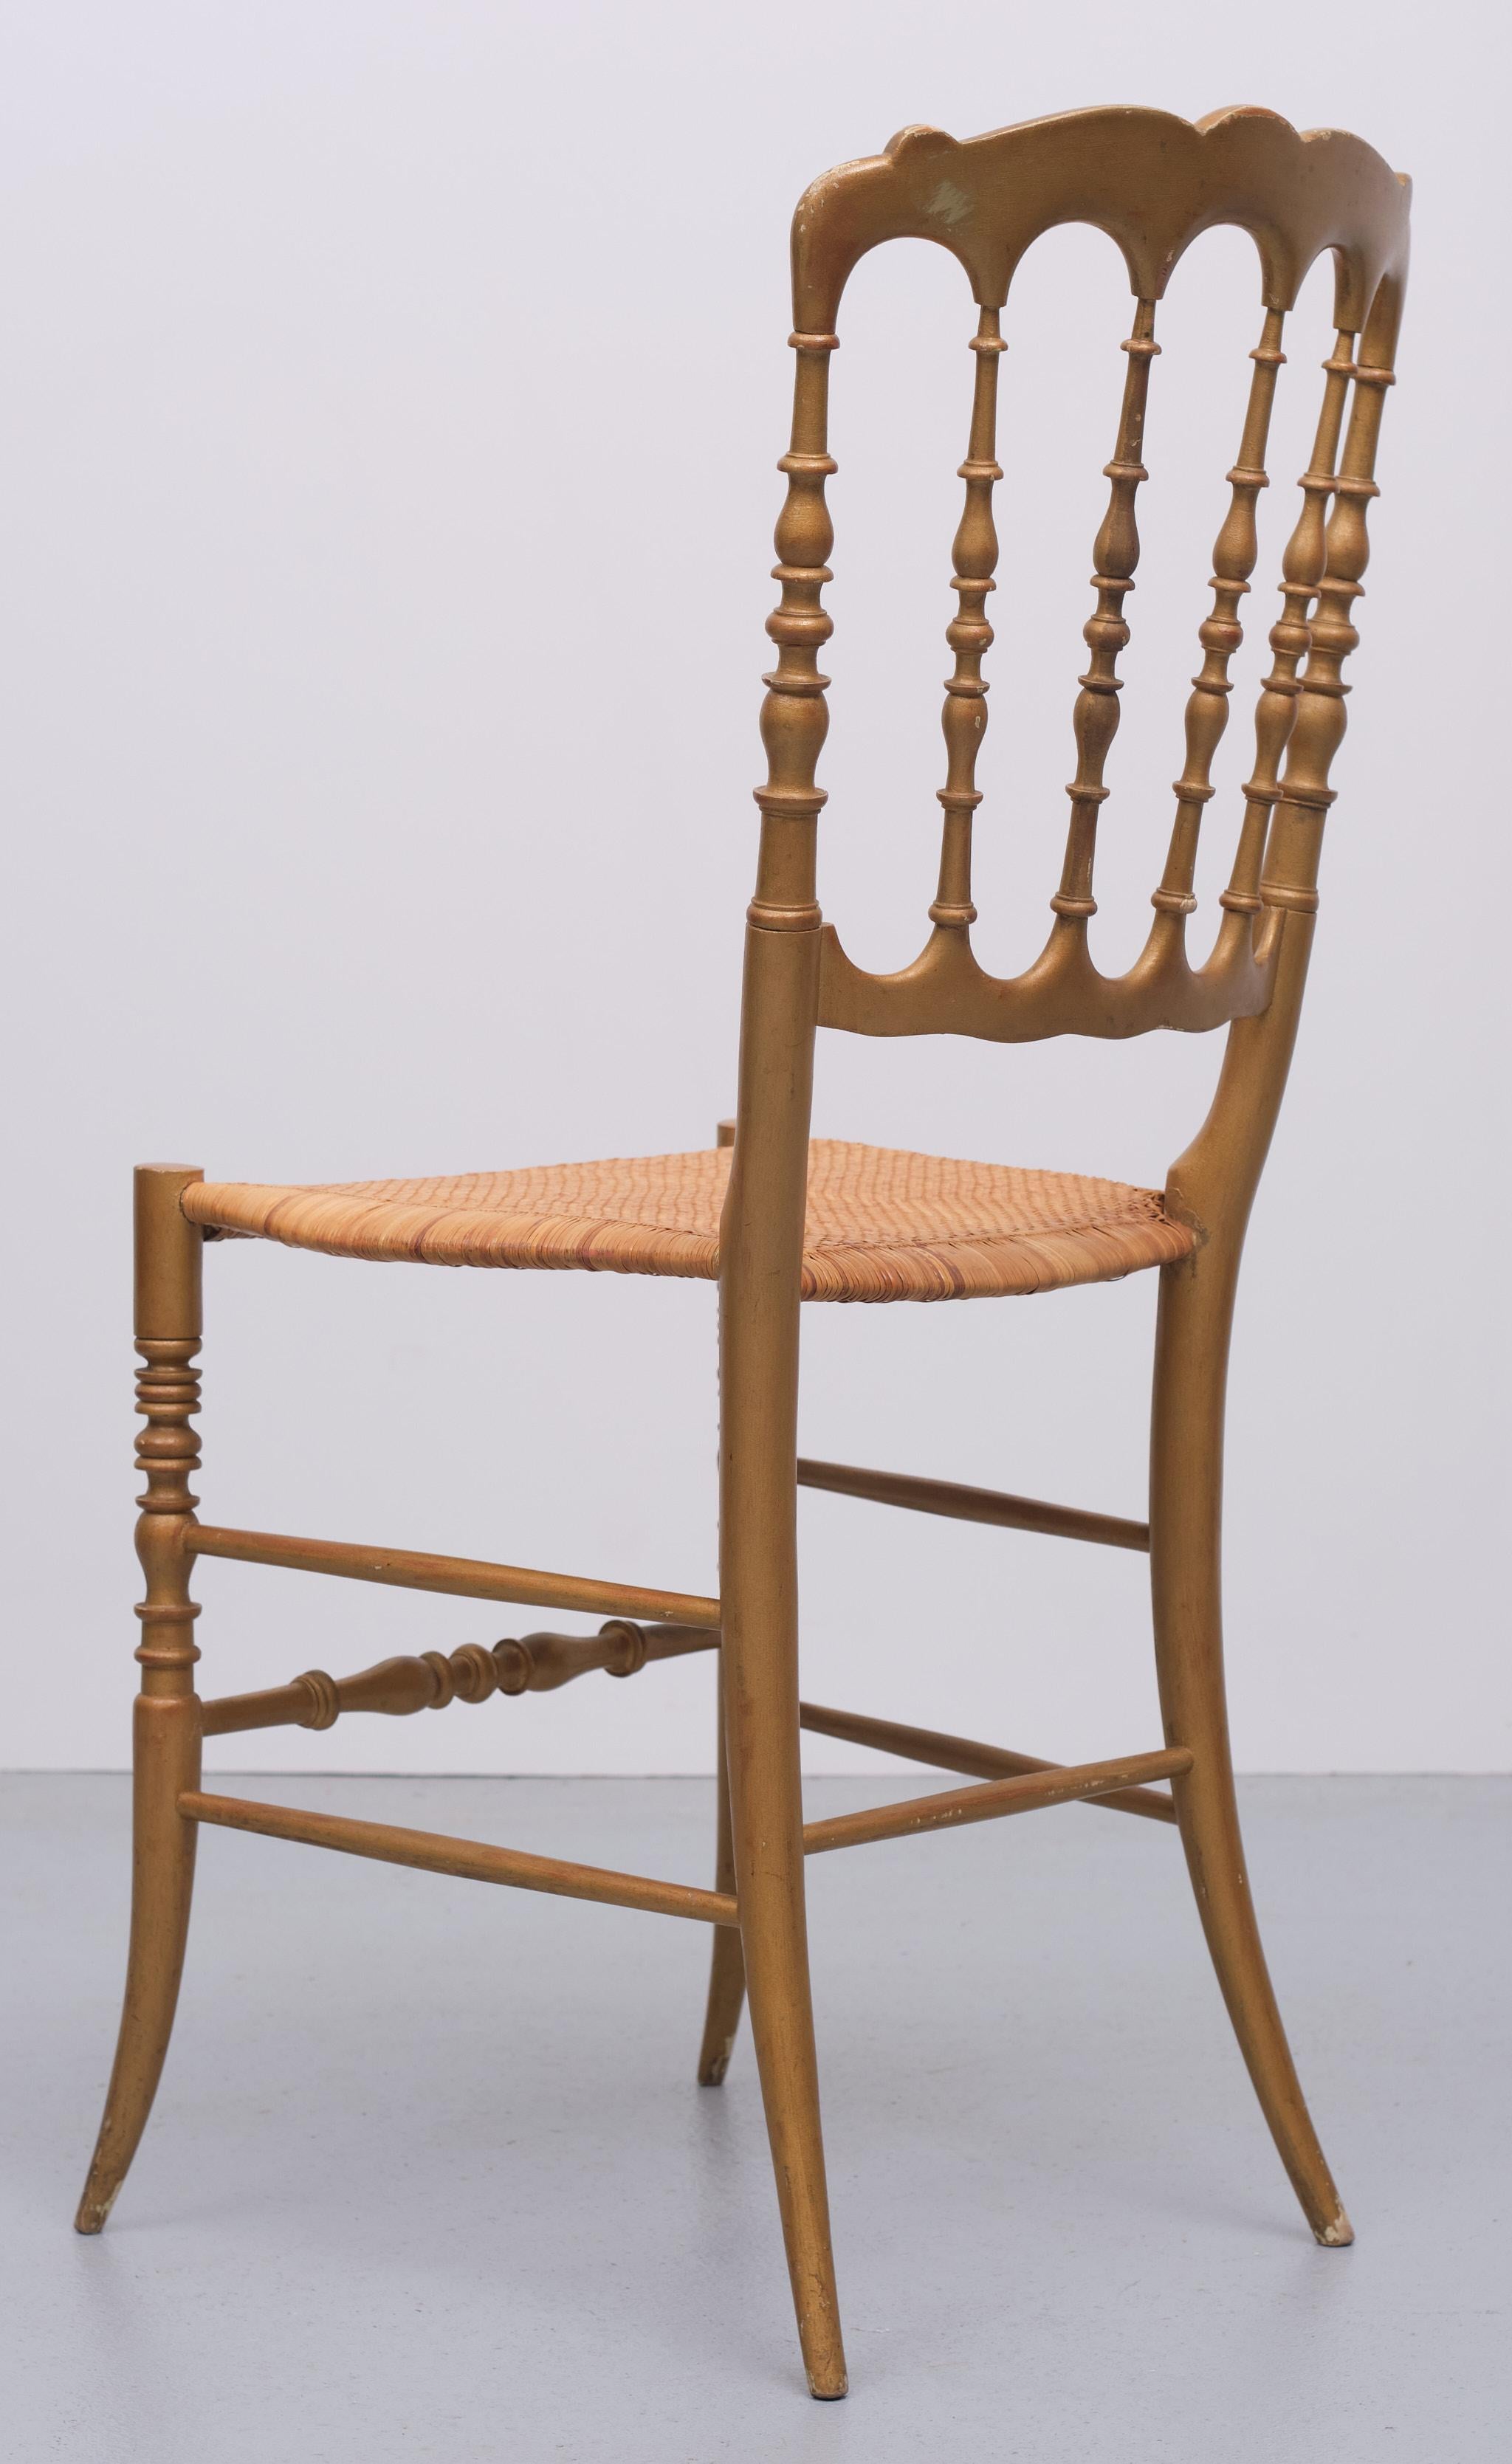 Sehr schöne elegante Chiavari Stuhl. kommt mit der Art nach Caned Sitz.
In einem Gold Farbe. alle original. sehr selten mit seiner ursprünglichen Garantie Etikett unter 
sehr guter Zustand.